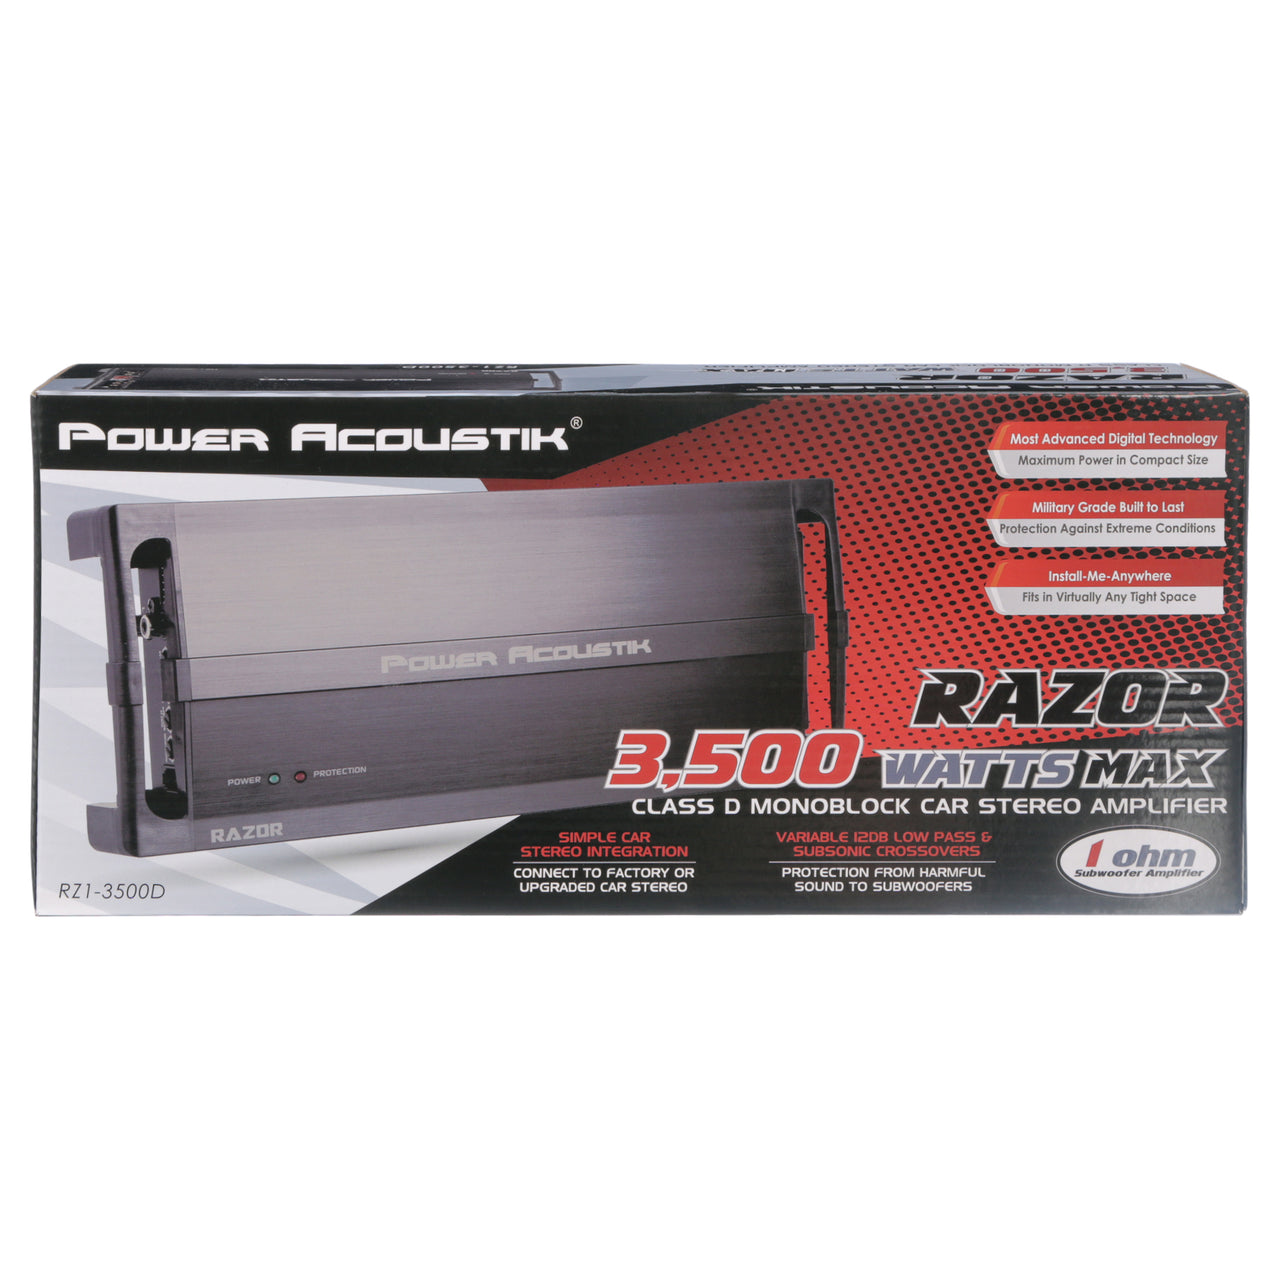 Power Acoustik RZ1-3500D RAZOR Series Monoblock Amplifier